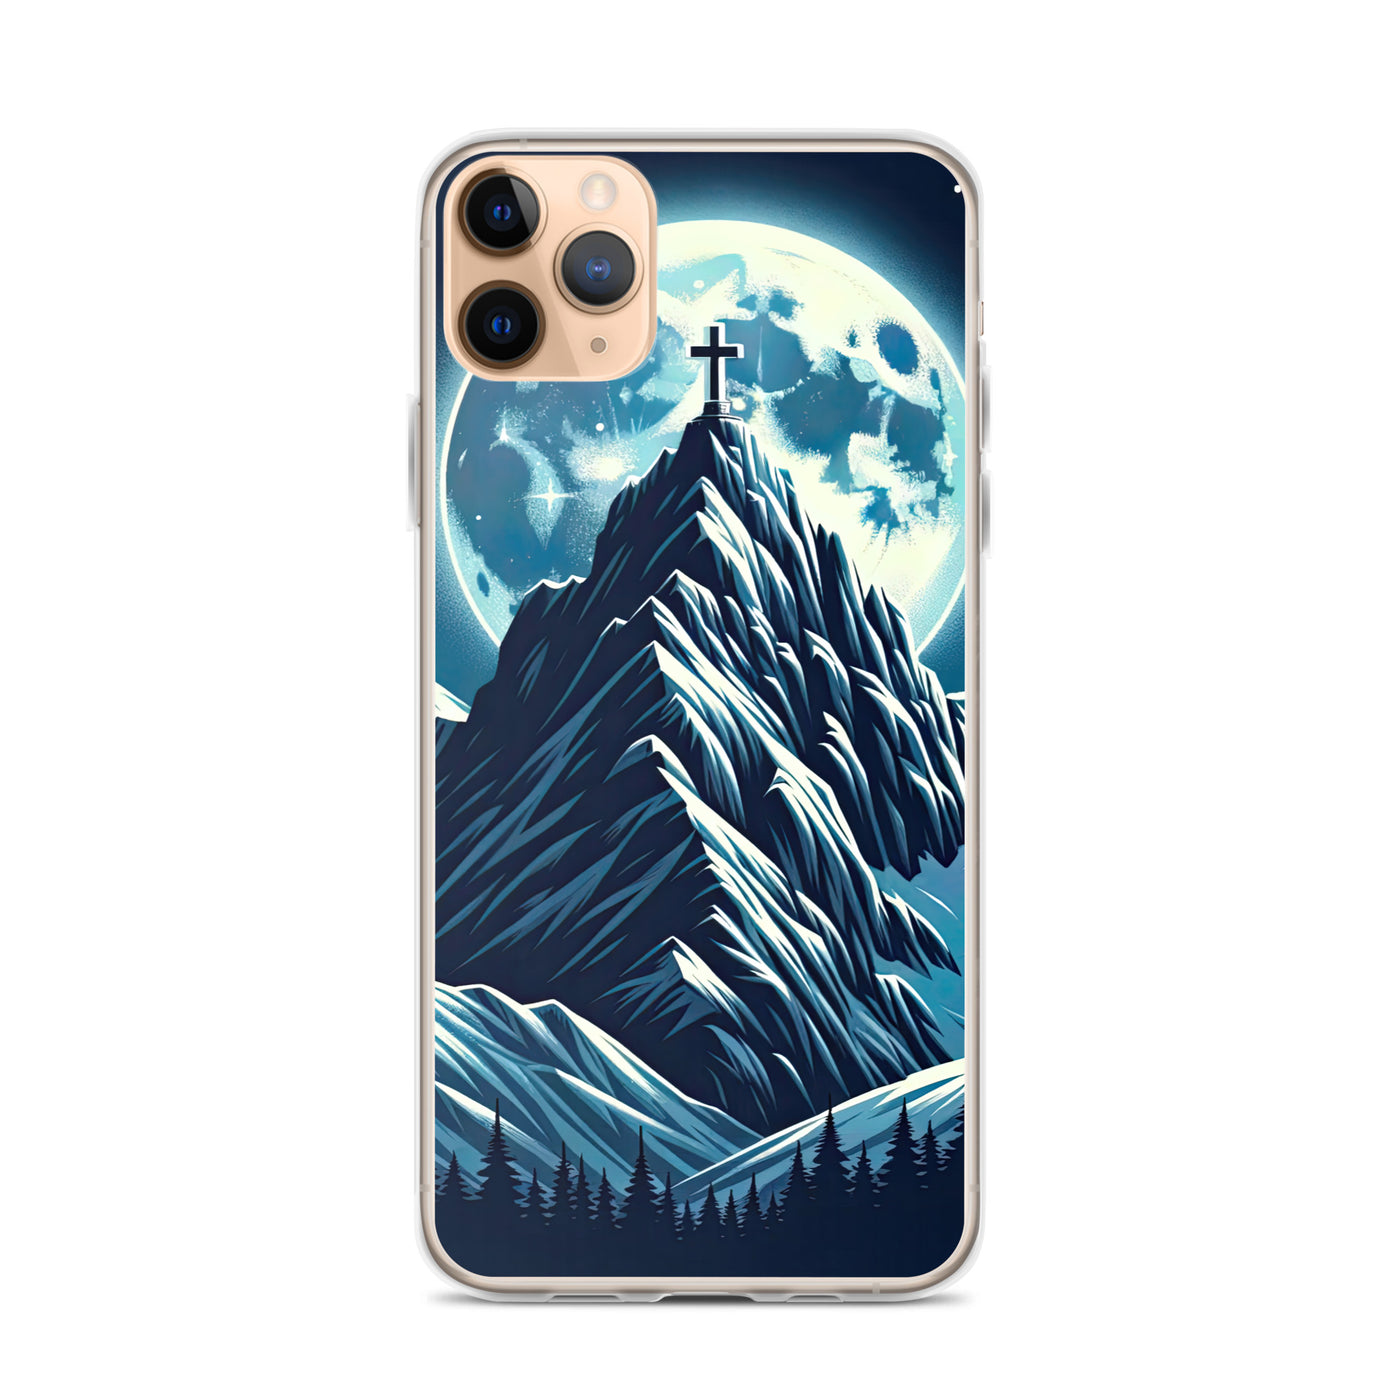 Mondnacht und Gipfelkreuz in den Alpen, glitzernde Schneegipfel - iPhone Schutzhülle (durchsichtig) berge xxx yyy zzz iPhone 11 Pro Max